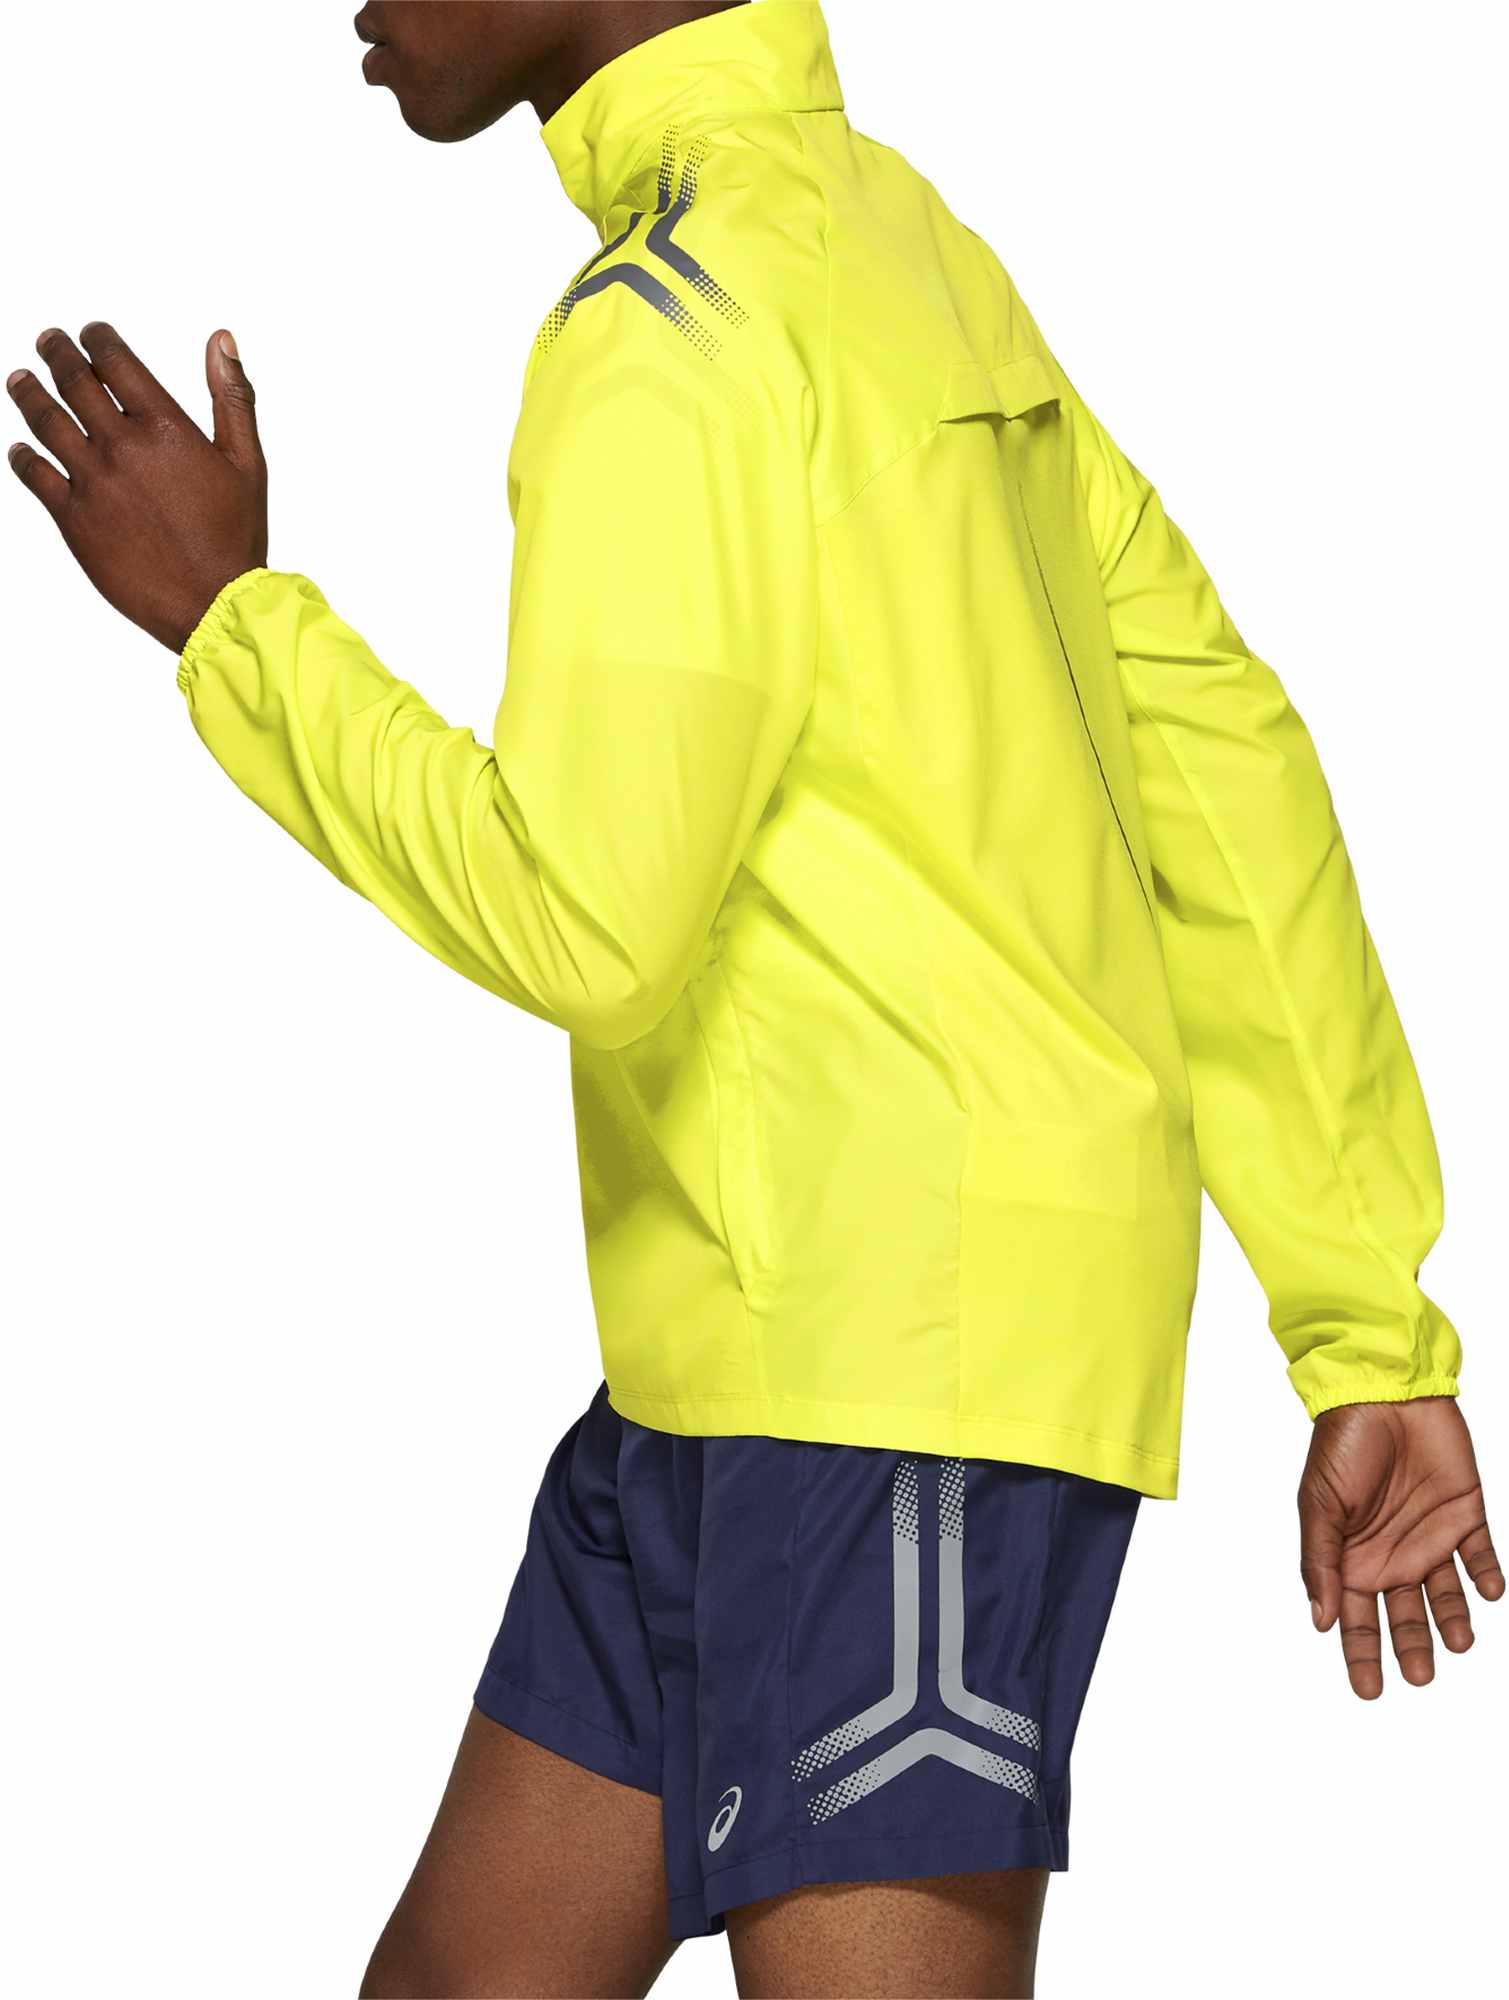 Men’s running jacket